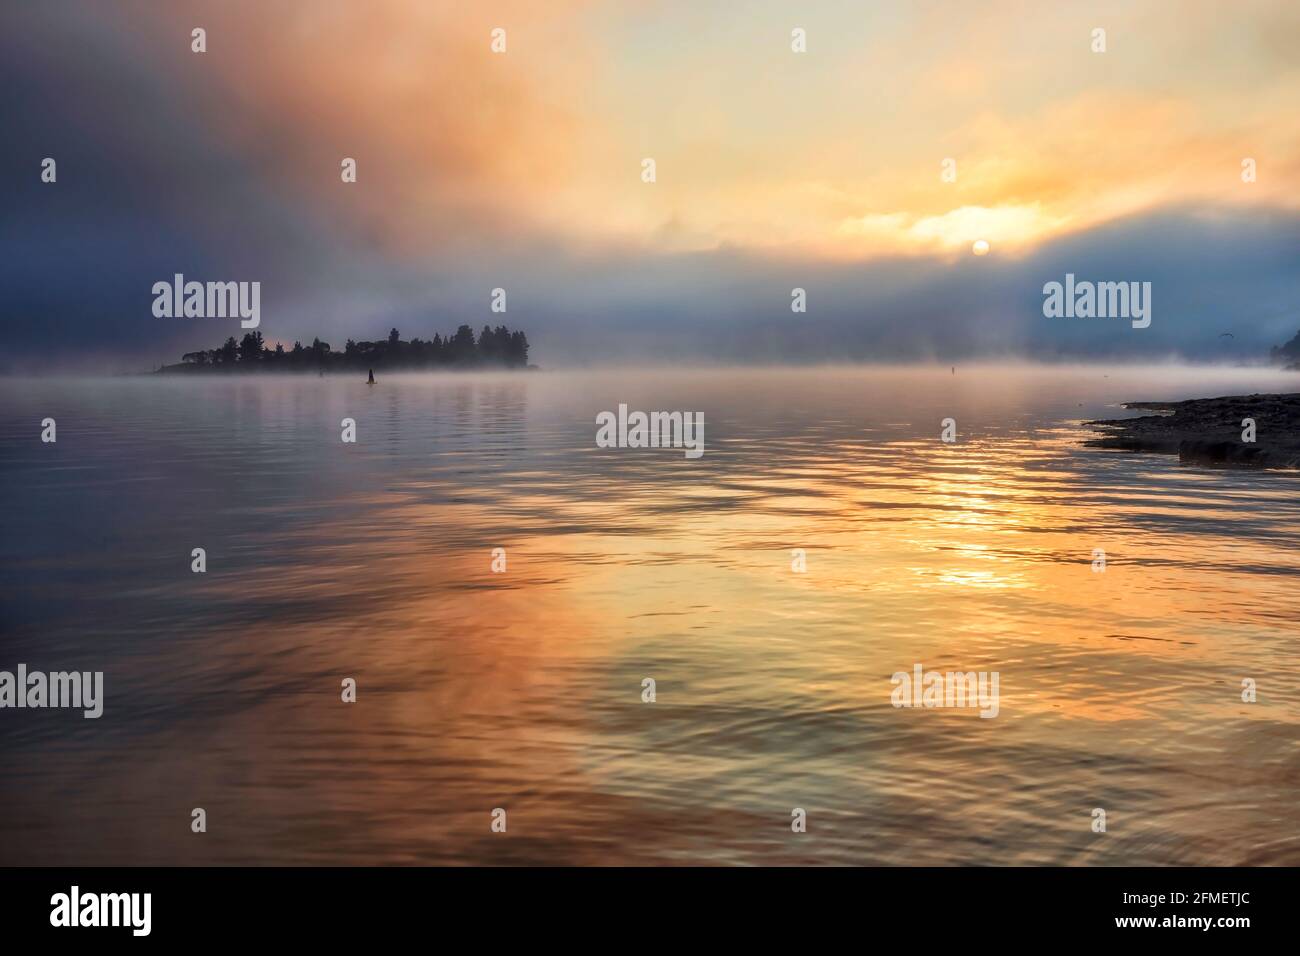 Il sole sorge sull'orizzonte dell'acqua sul lago Jindabyne nelle Montagne Snowy australiane - luce solare panoramica in condizioni di nebbia nebbiosa. Foto Stock